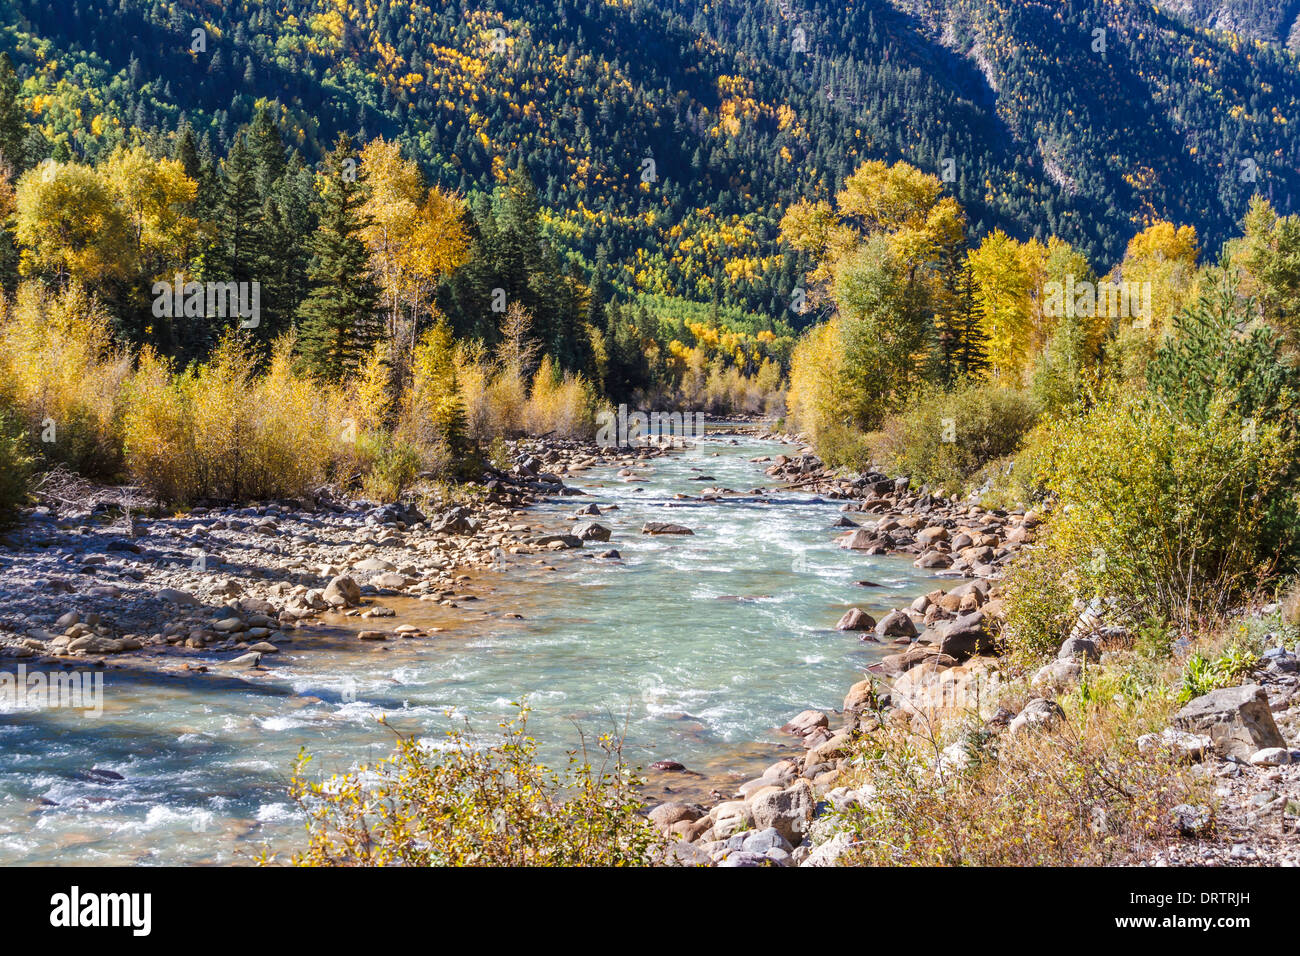 The Animas River in autumn, in the 'San Juan Mountains' of Southwestern Colorado. Stock Photo